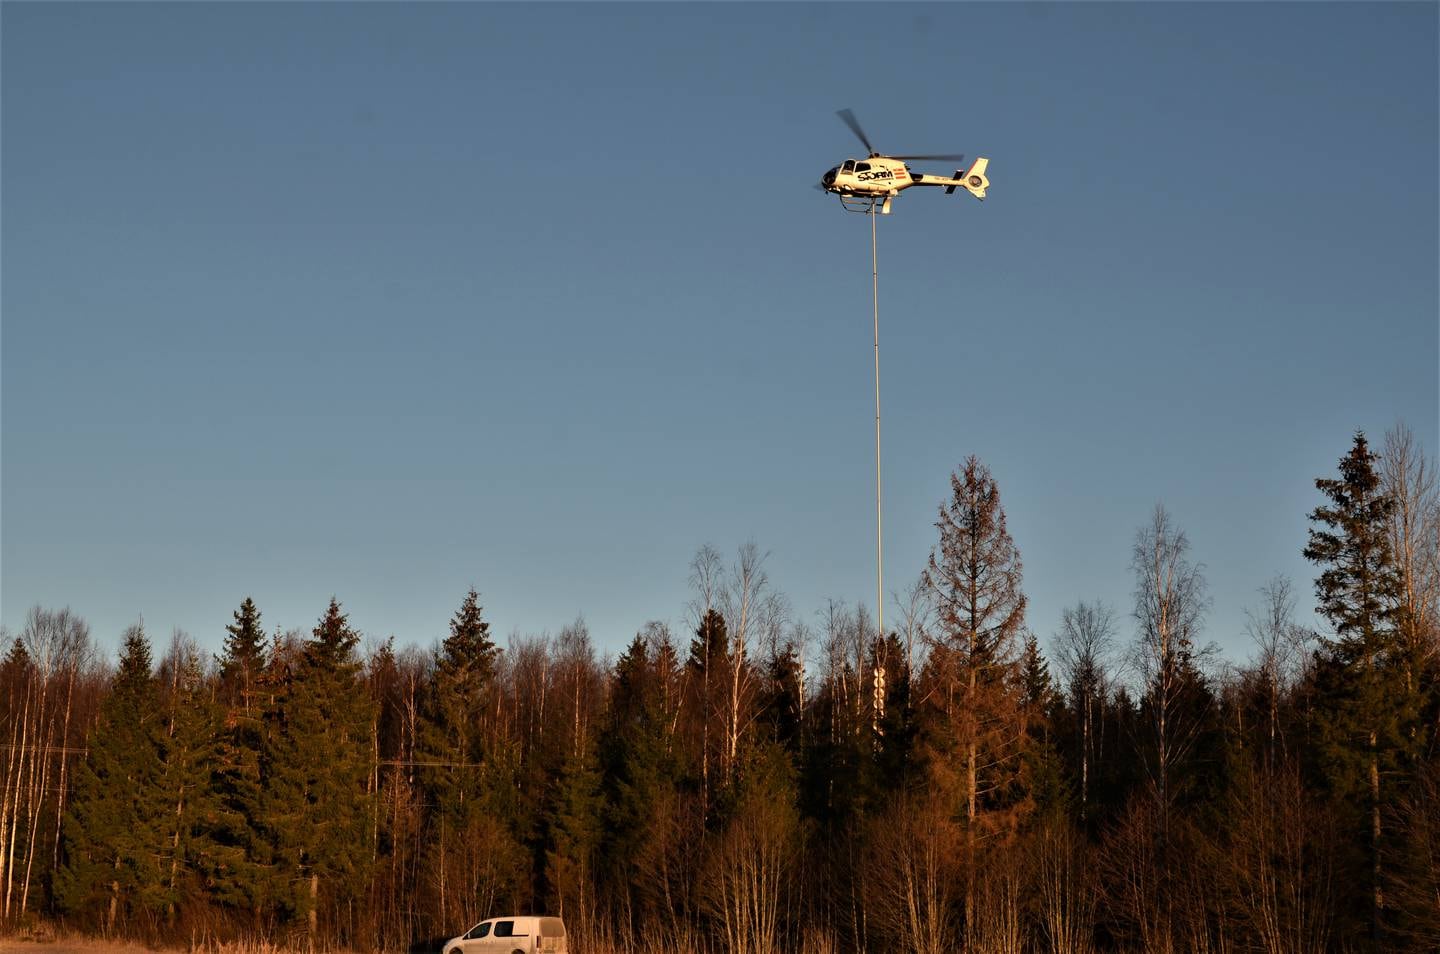 Med stødig hånd manøvrer pilot Kalle Schmidt helikopter og sag langs strømlinjene. Med en total 30 meter lang leddet stang under.